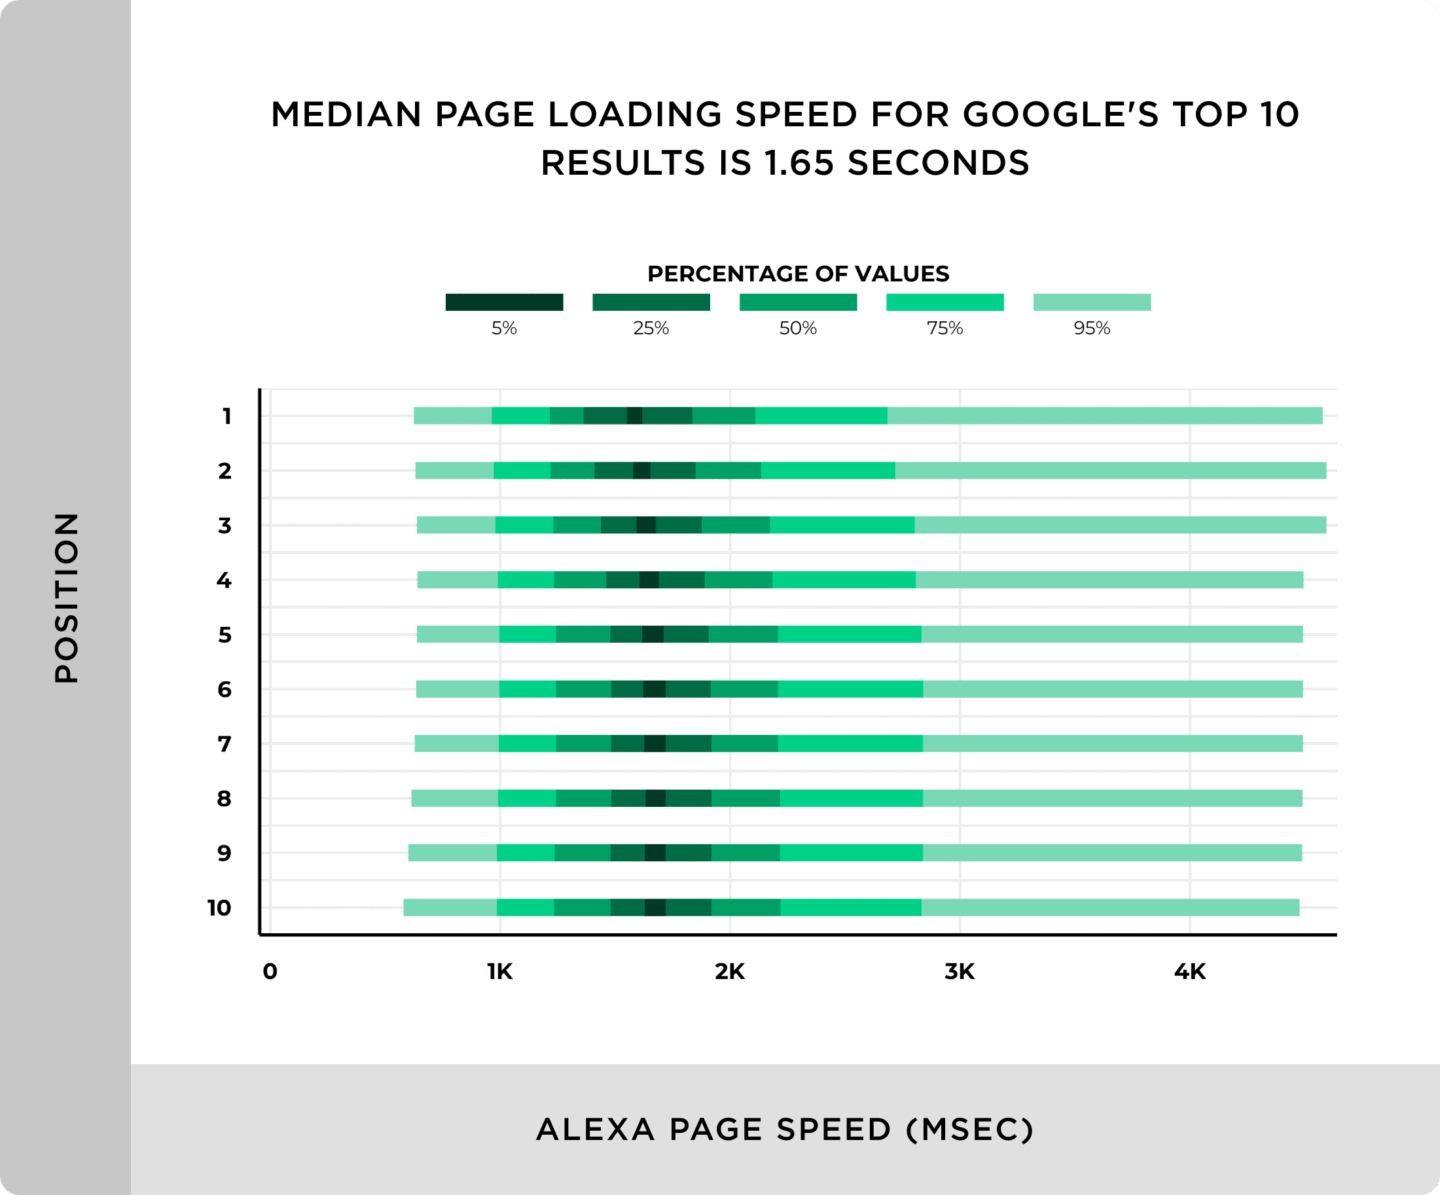 Thuật toán của Google sẽ hạ rank của những trang CỰC CHẬM, còn những trang load không quá chậm (trung bình là 1,65 giây) thì không hề bị ảnh hưởng đến rankings, đặc biệt là rank 1.